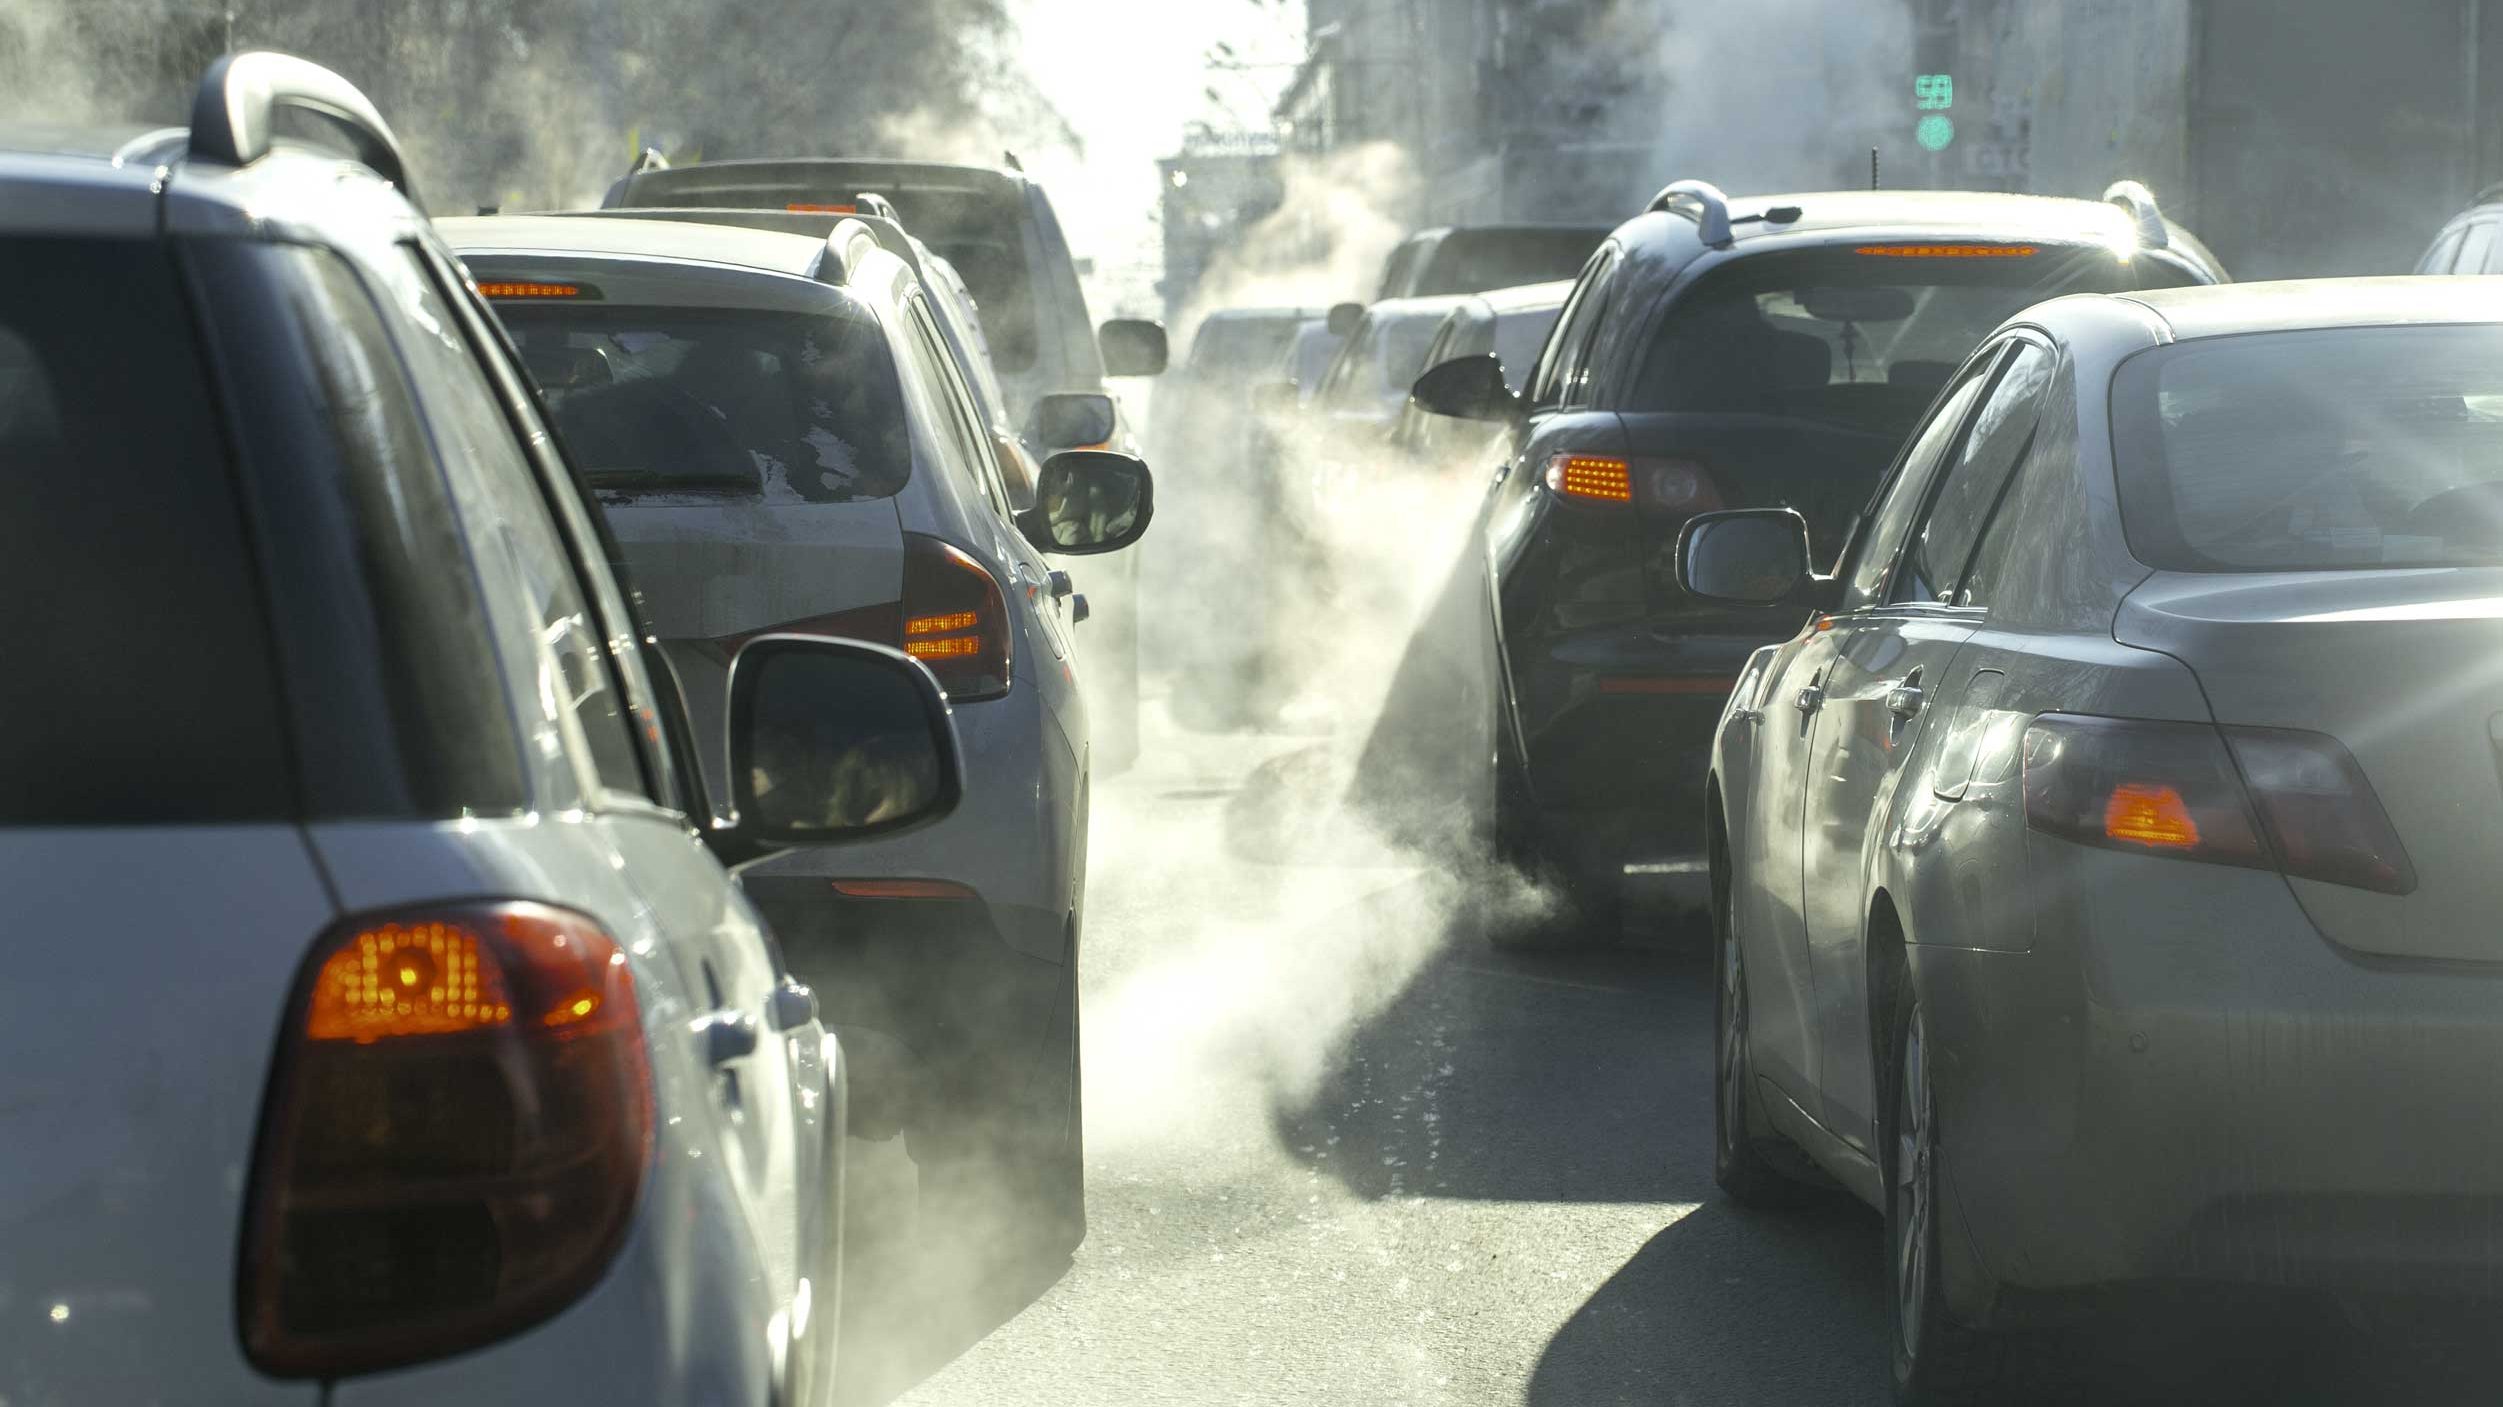 O Conselho da União Europeia adotou esta sexta-feira o Regulamento Euro 7, estabelece requisitos para a durabilidade das baterias e regras para as emissões de escape dos veículos rodoviários, mas também para outros tipos de emissões, como a abrasão dos pneus e as emissões de partículas dos travões